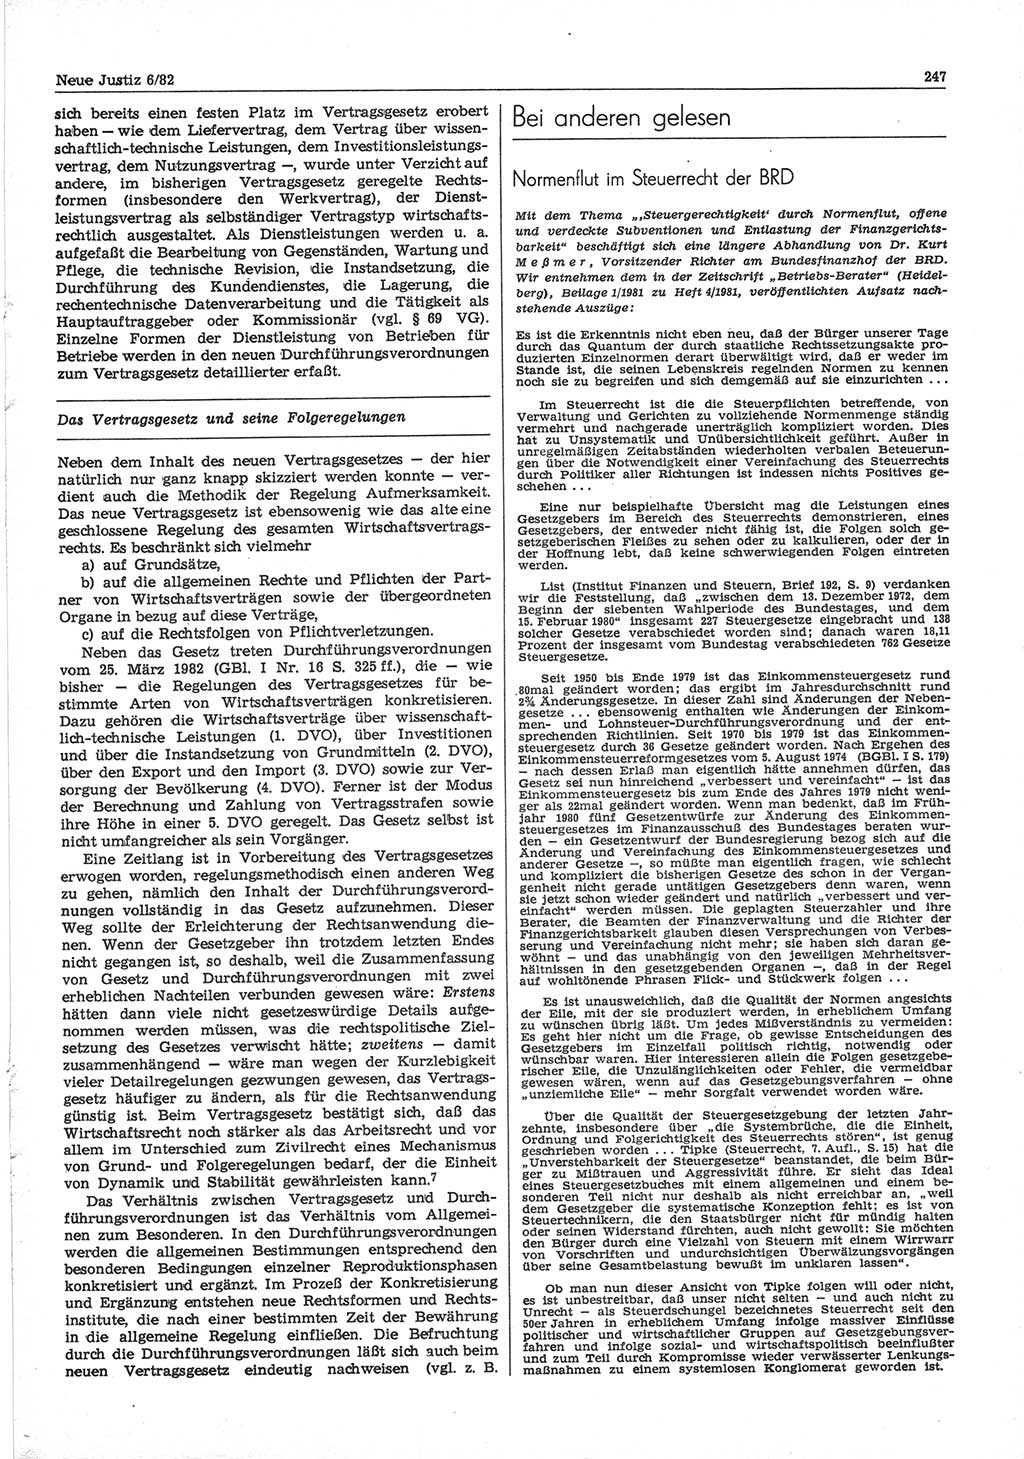 Neue Justiz (NJ), Zeitschrift für sozialistisches Recht und Gesetzlichkeit [Deutsche Demokratische Republik (DDR)], 36. Jahrgang 1982, Seite 247 (NJ DDR 1982, S. 247)